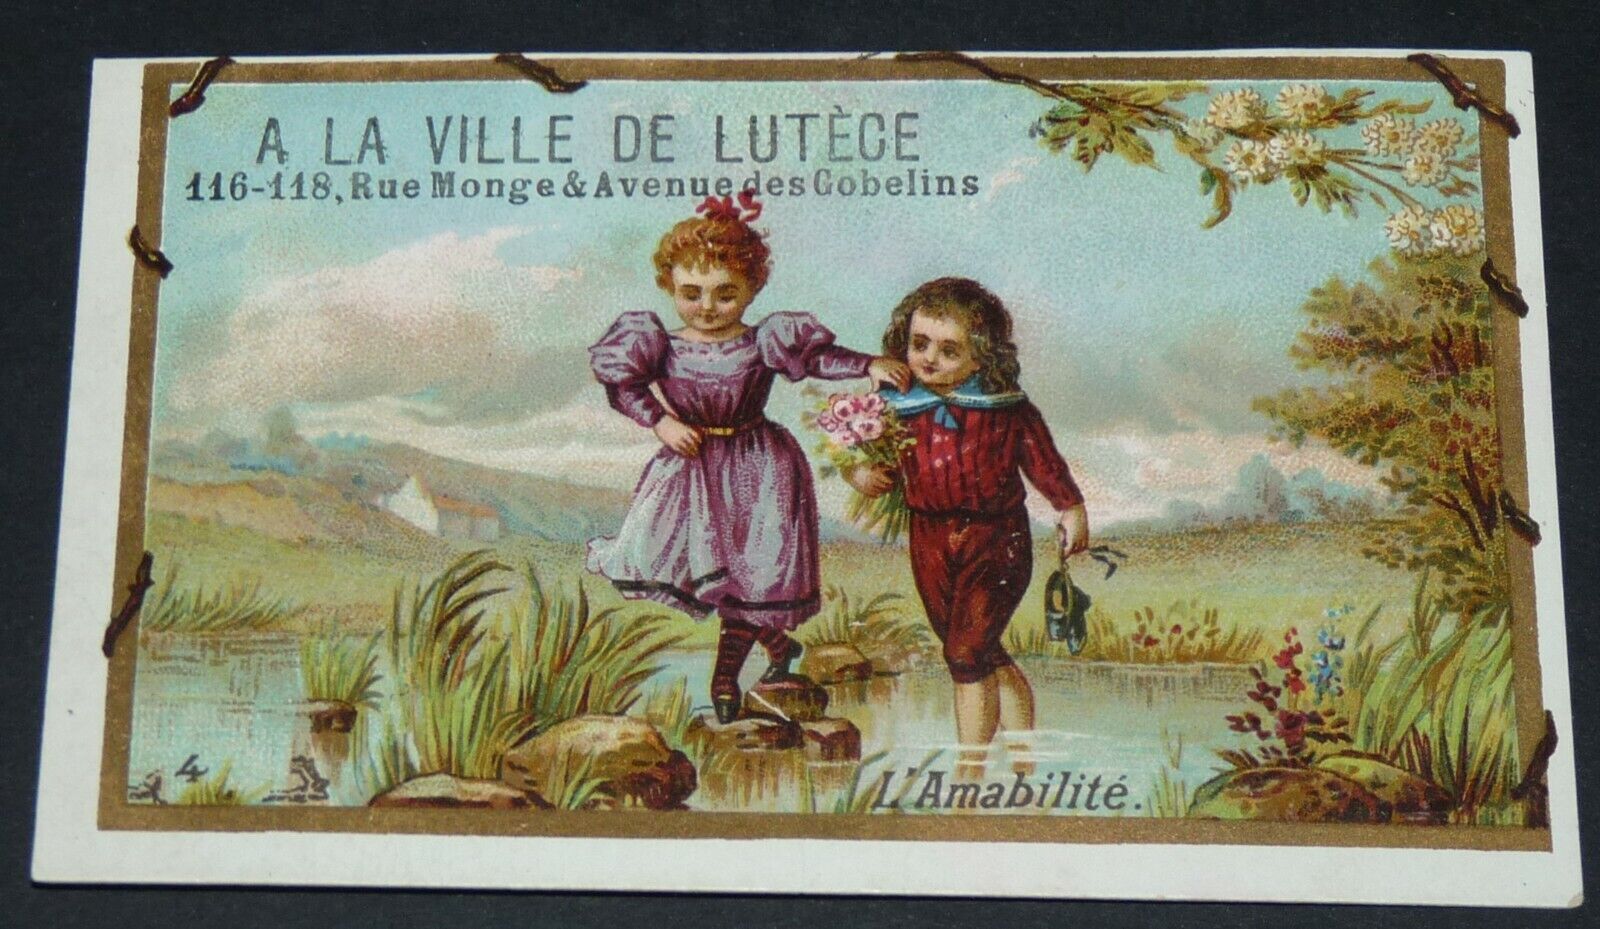 CHROMO 1880-1895 A LA VILLE DE LUTECE PARIS SCENE CHILDREN KINDNESS 